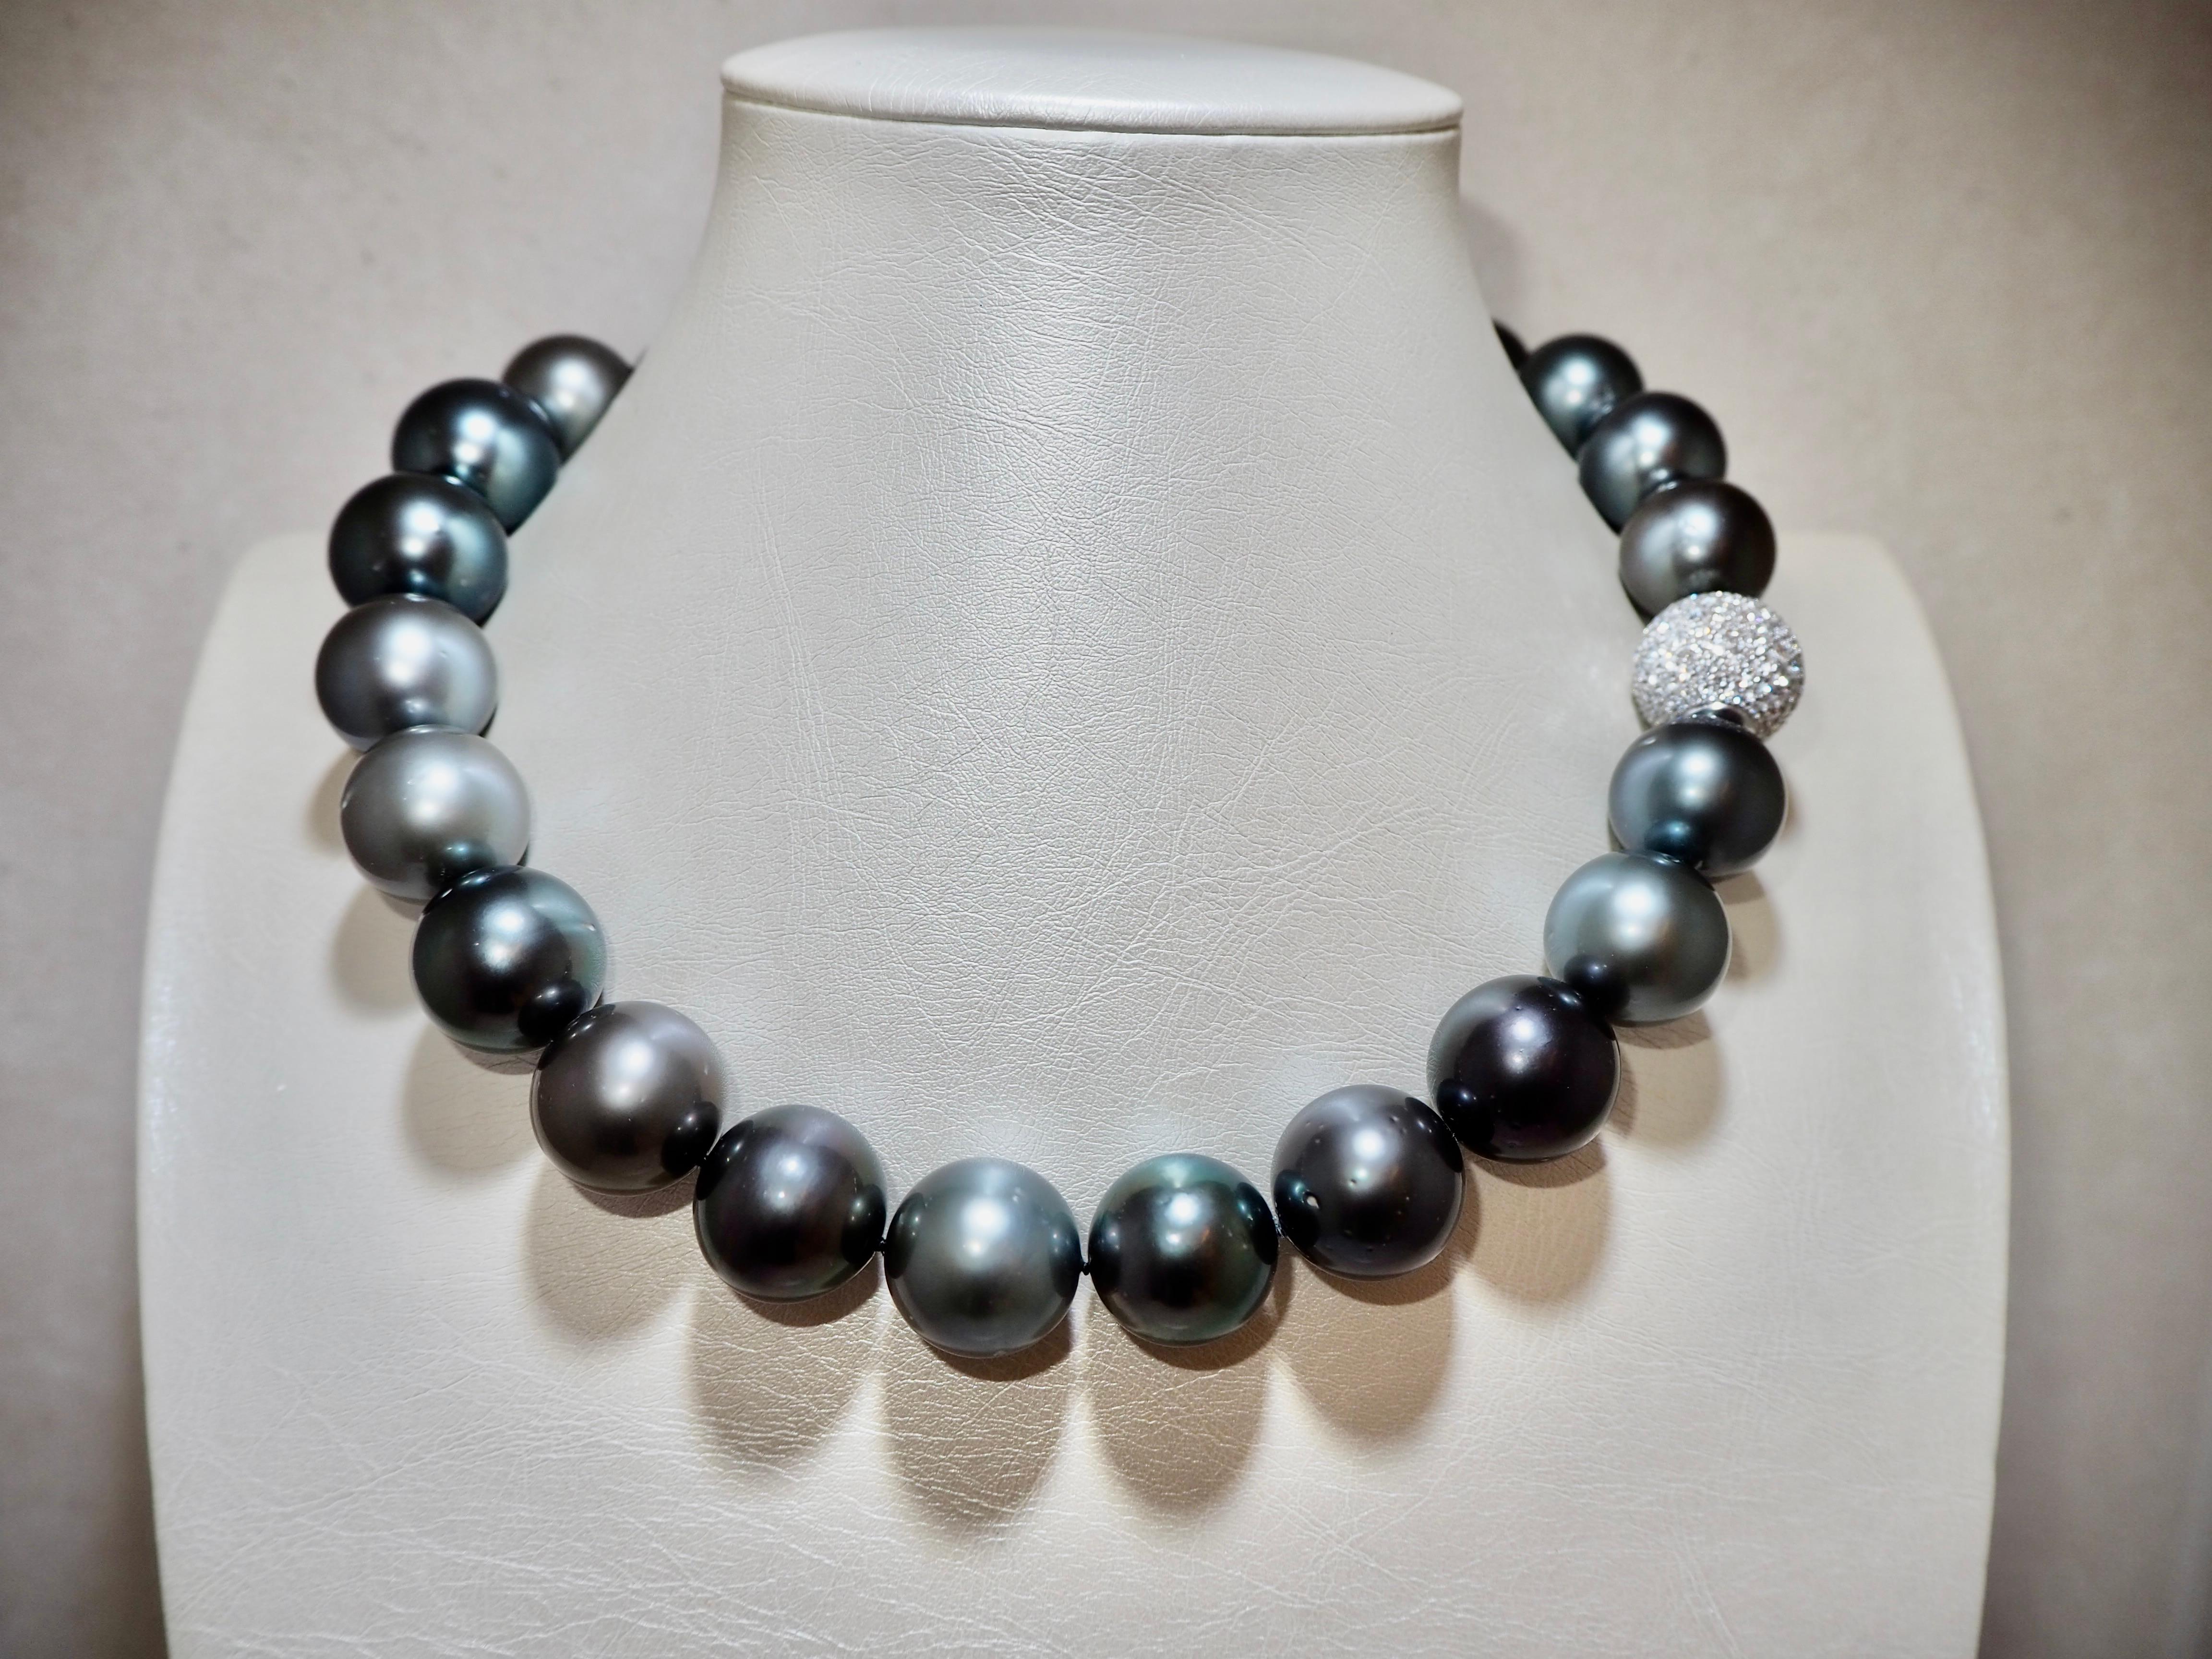 Die Tahiti-Perlenkette aus Französisch-Polynesien besteht aus 24 Perlen mit einem Durchmesser von 18-20 mm. Die Perlen sind als AA eingestuft, was bedeutet, dass 80 % ihrer Oberfläche frei von Einschlüssen sind.

Die Halskette hat einen